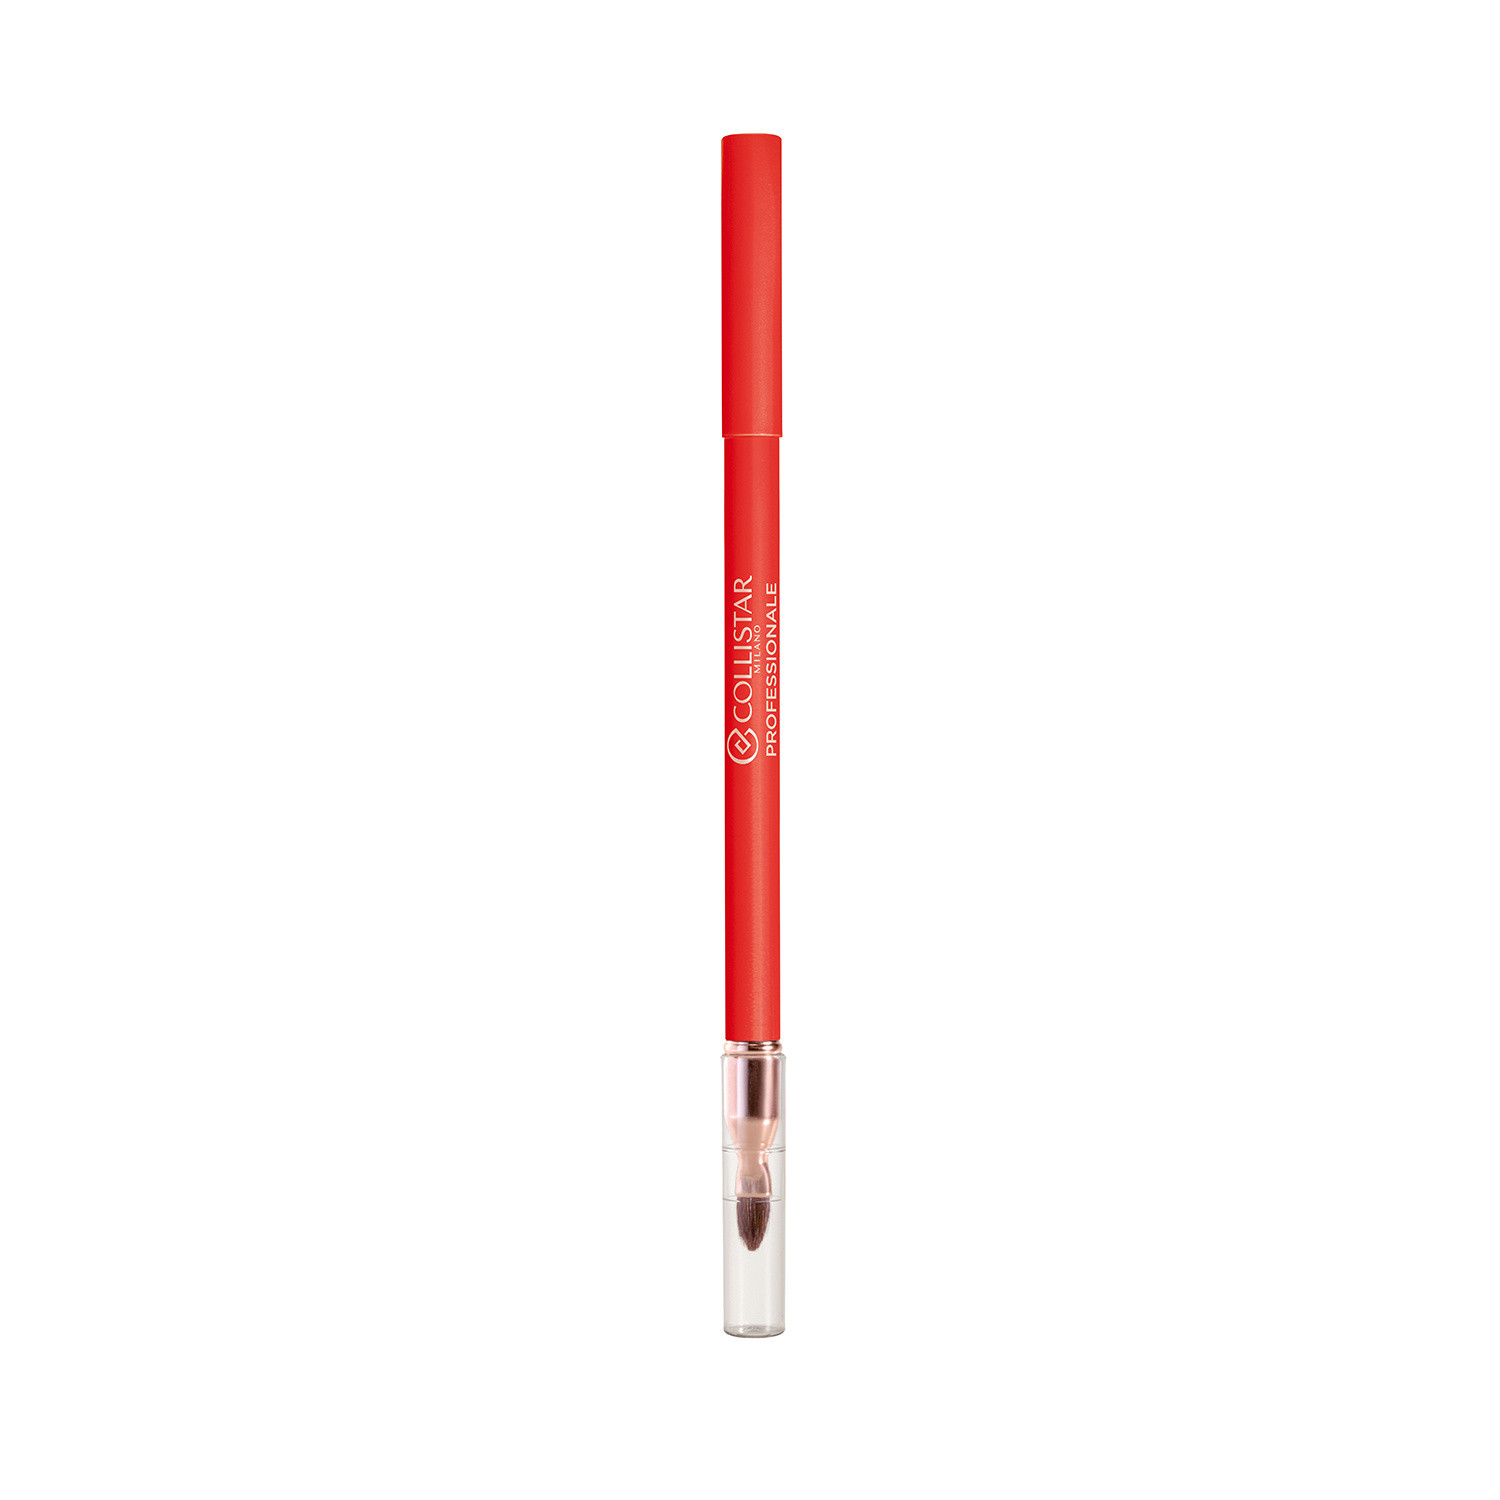 Collistar - Professionale matita labbra lunga durata - 40 Mandarino, Arancione, large image number 0